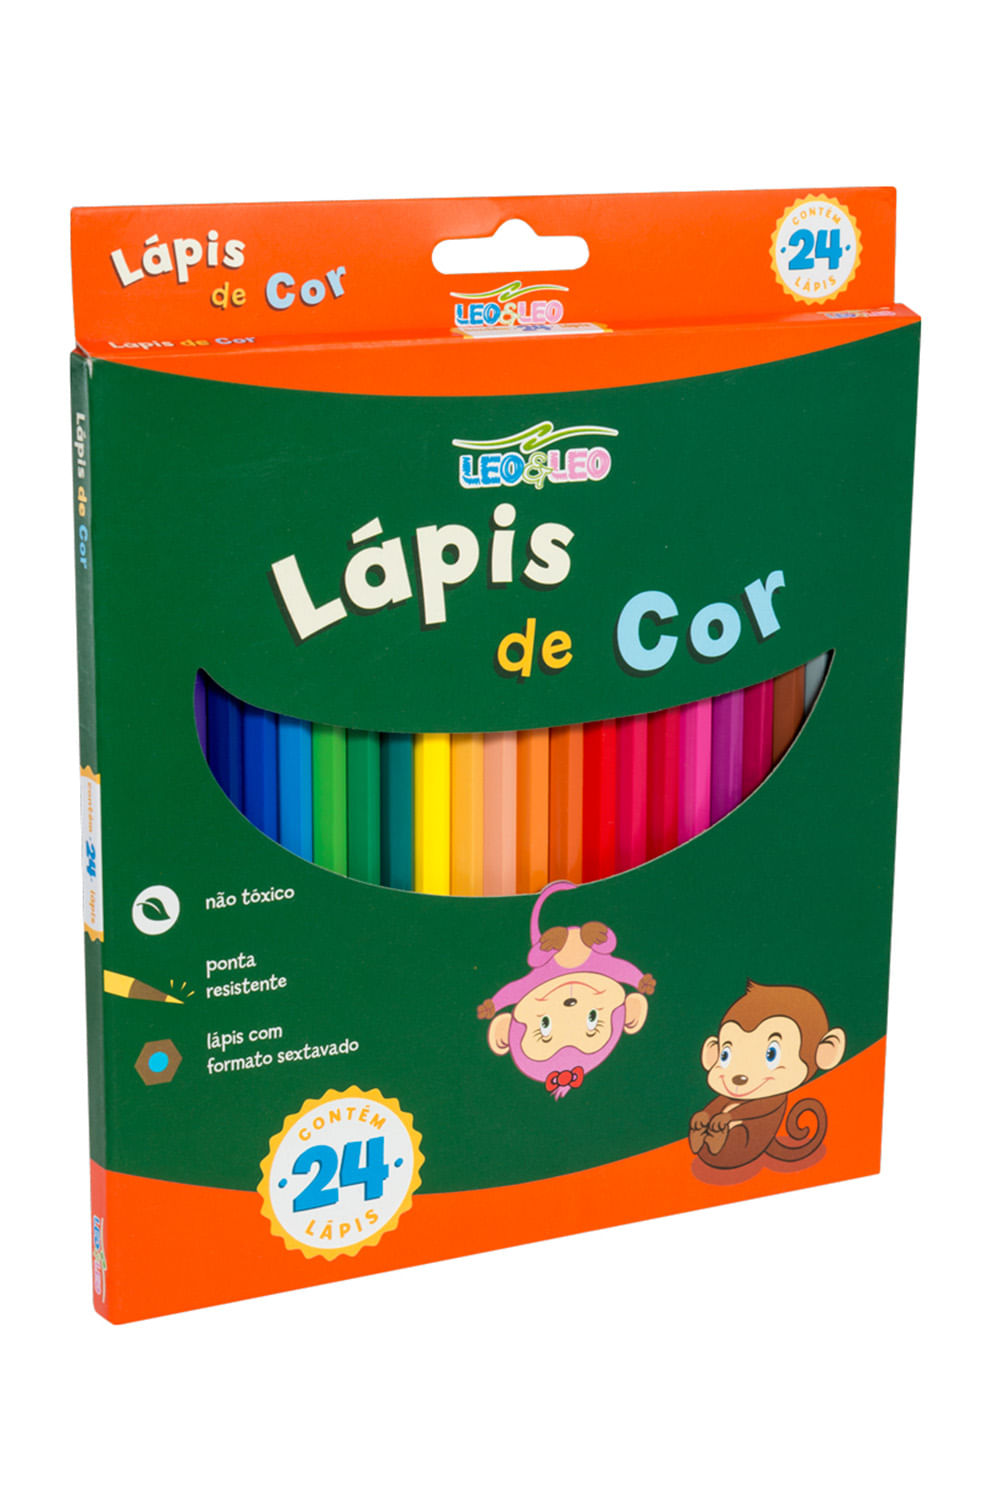 Lapis De Cor Mini 12 Cores - leonora